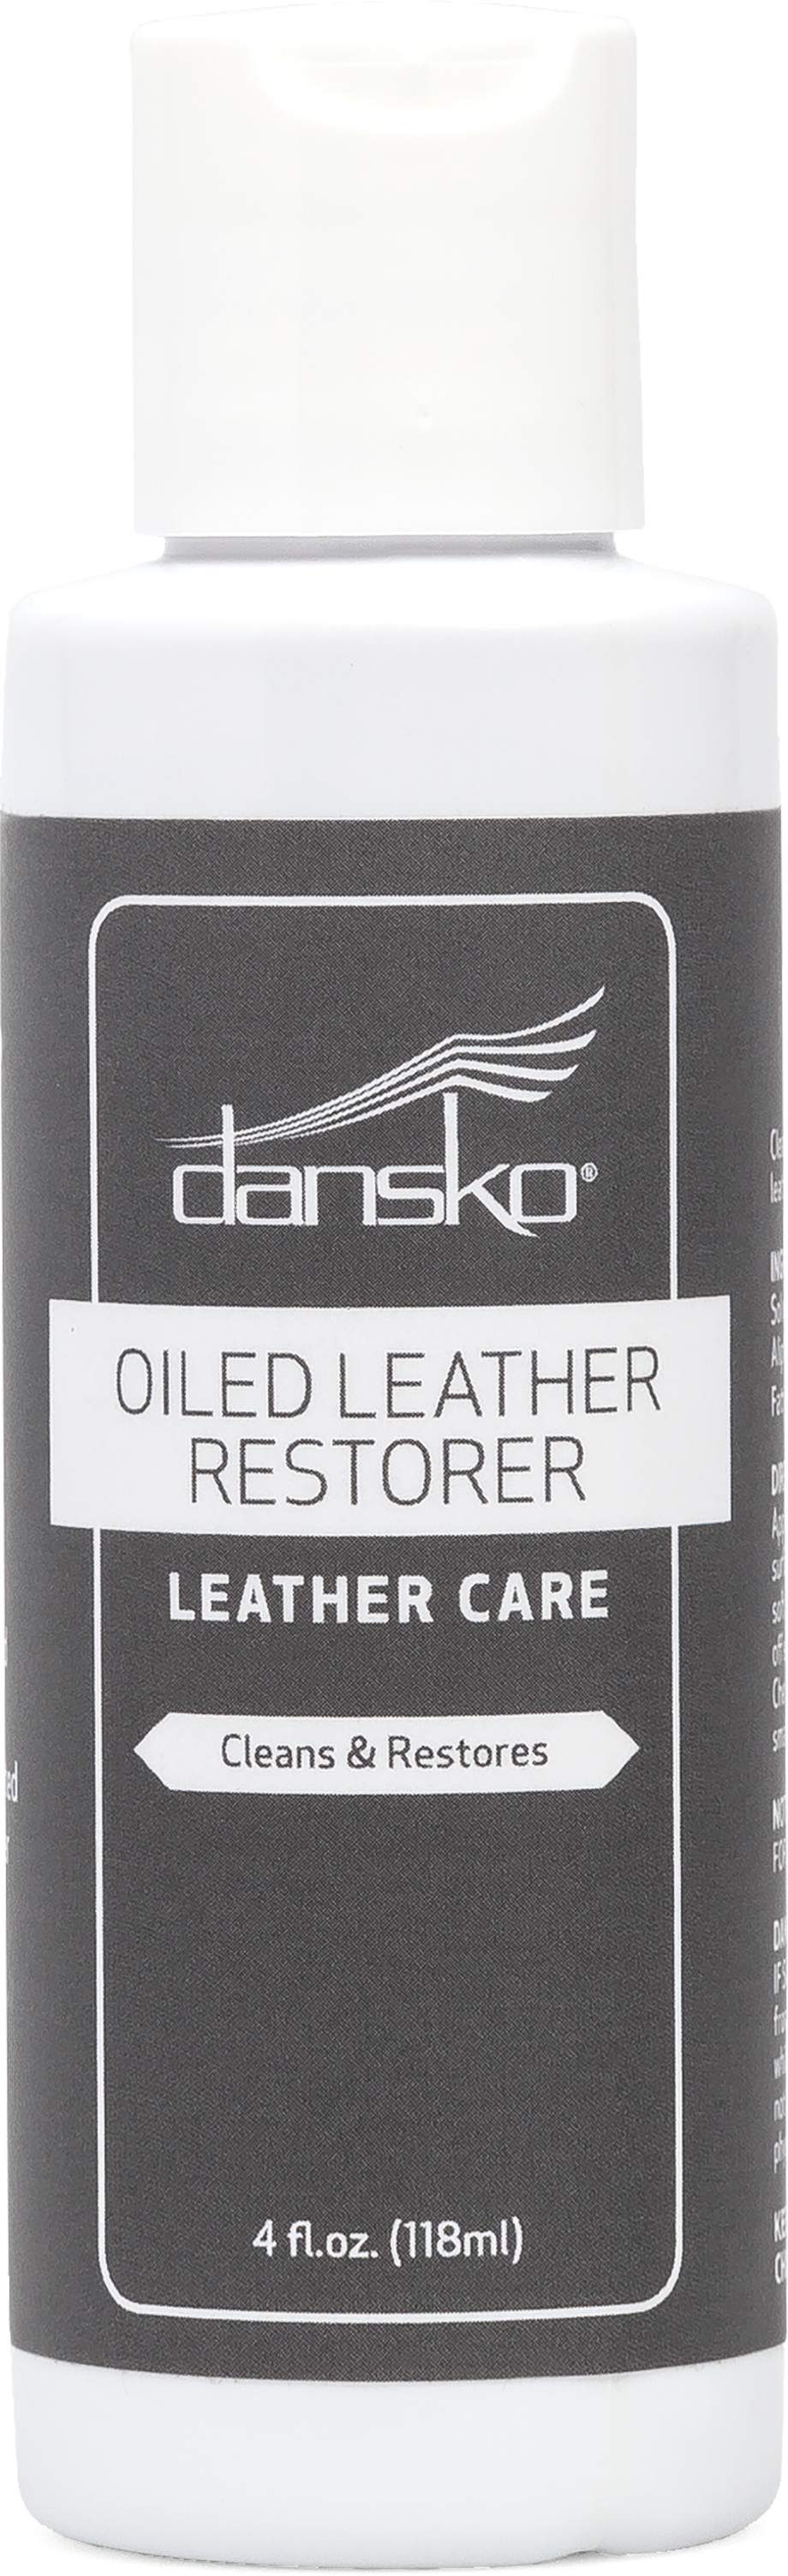 dansko oiled leather restorer